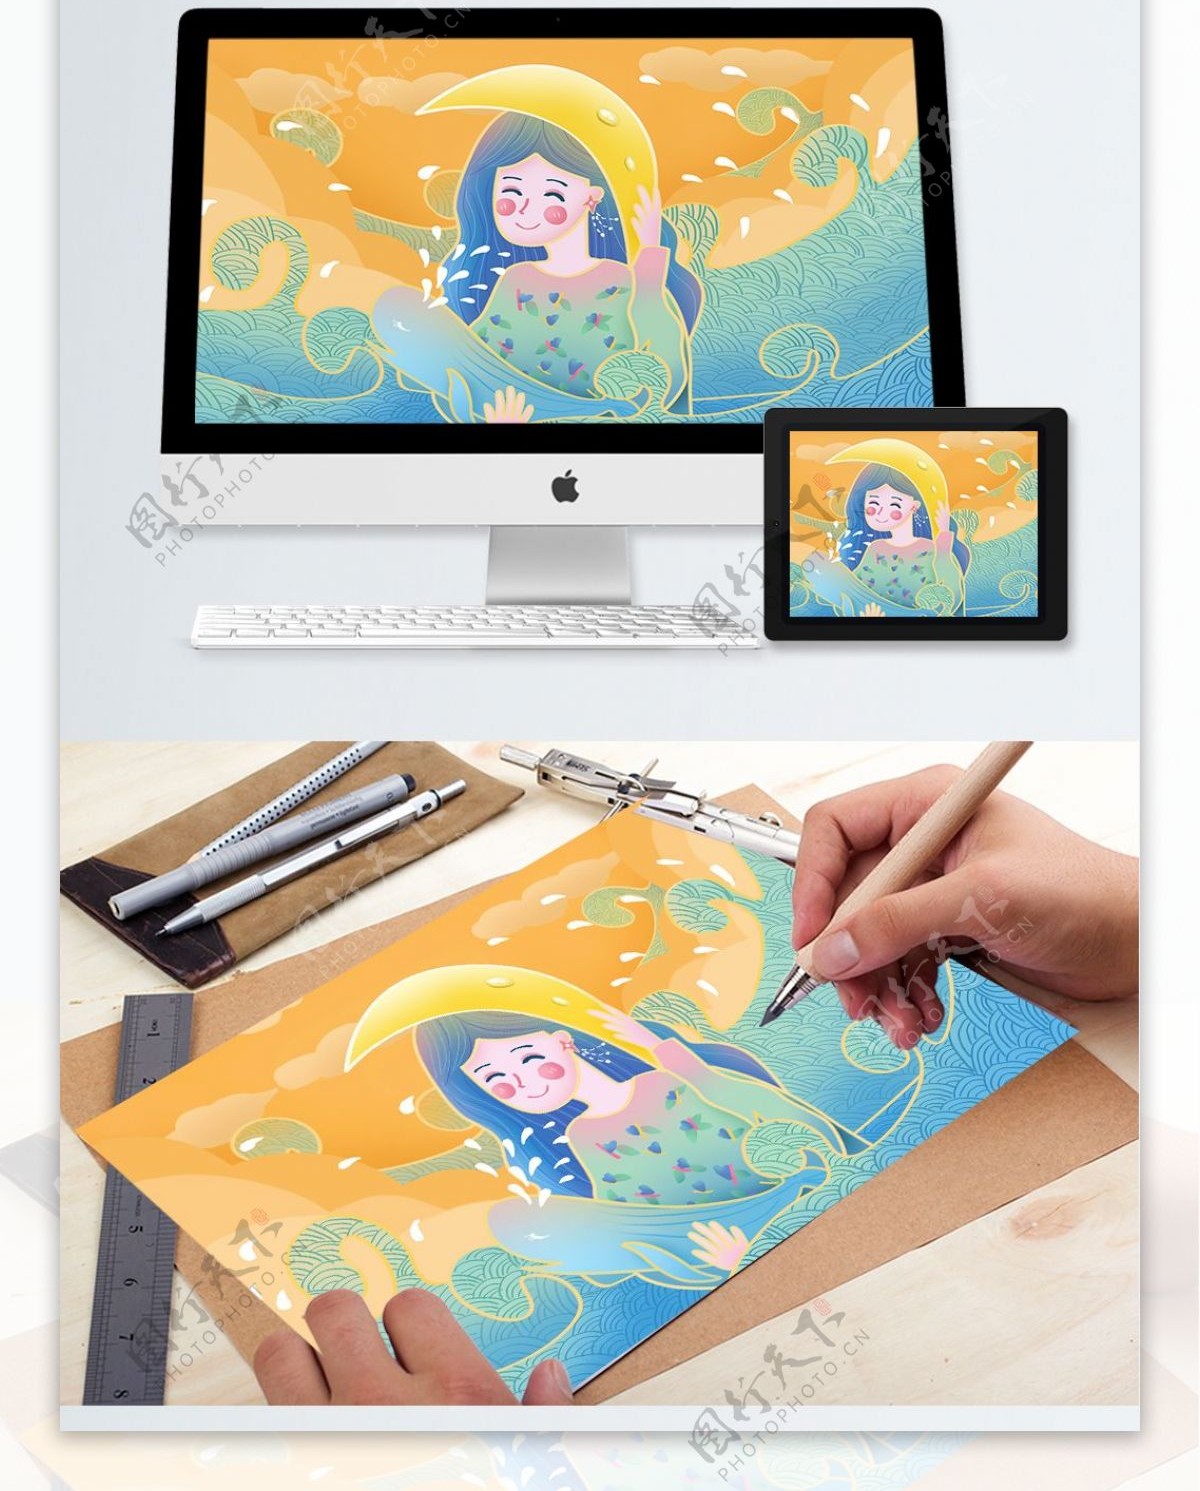 原创手绘插画流光溢彩海洋中的女孩与鲸